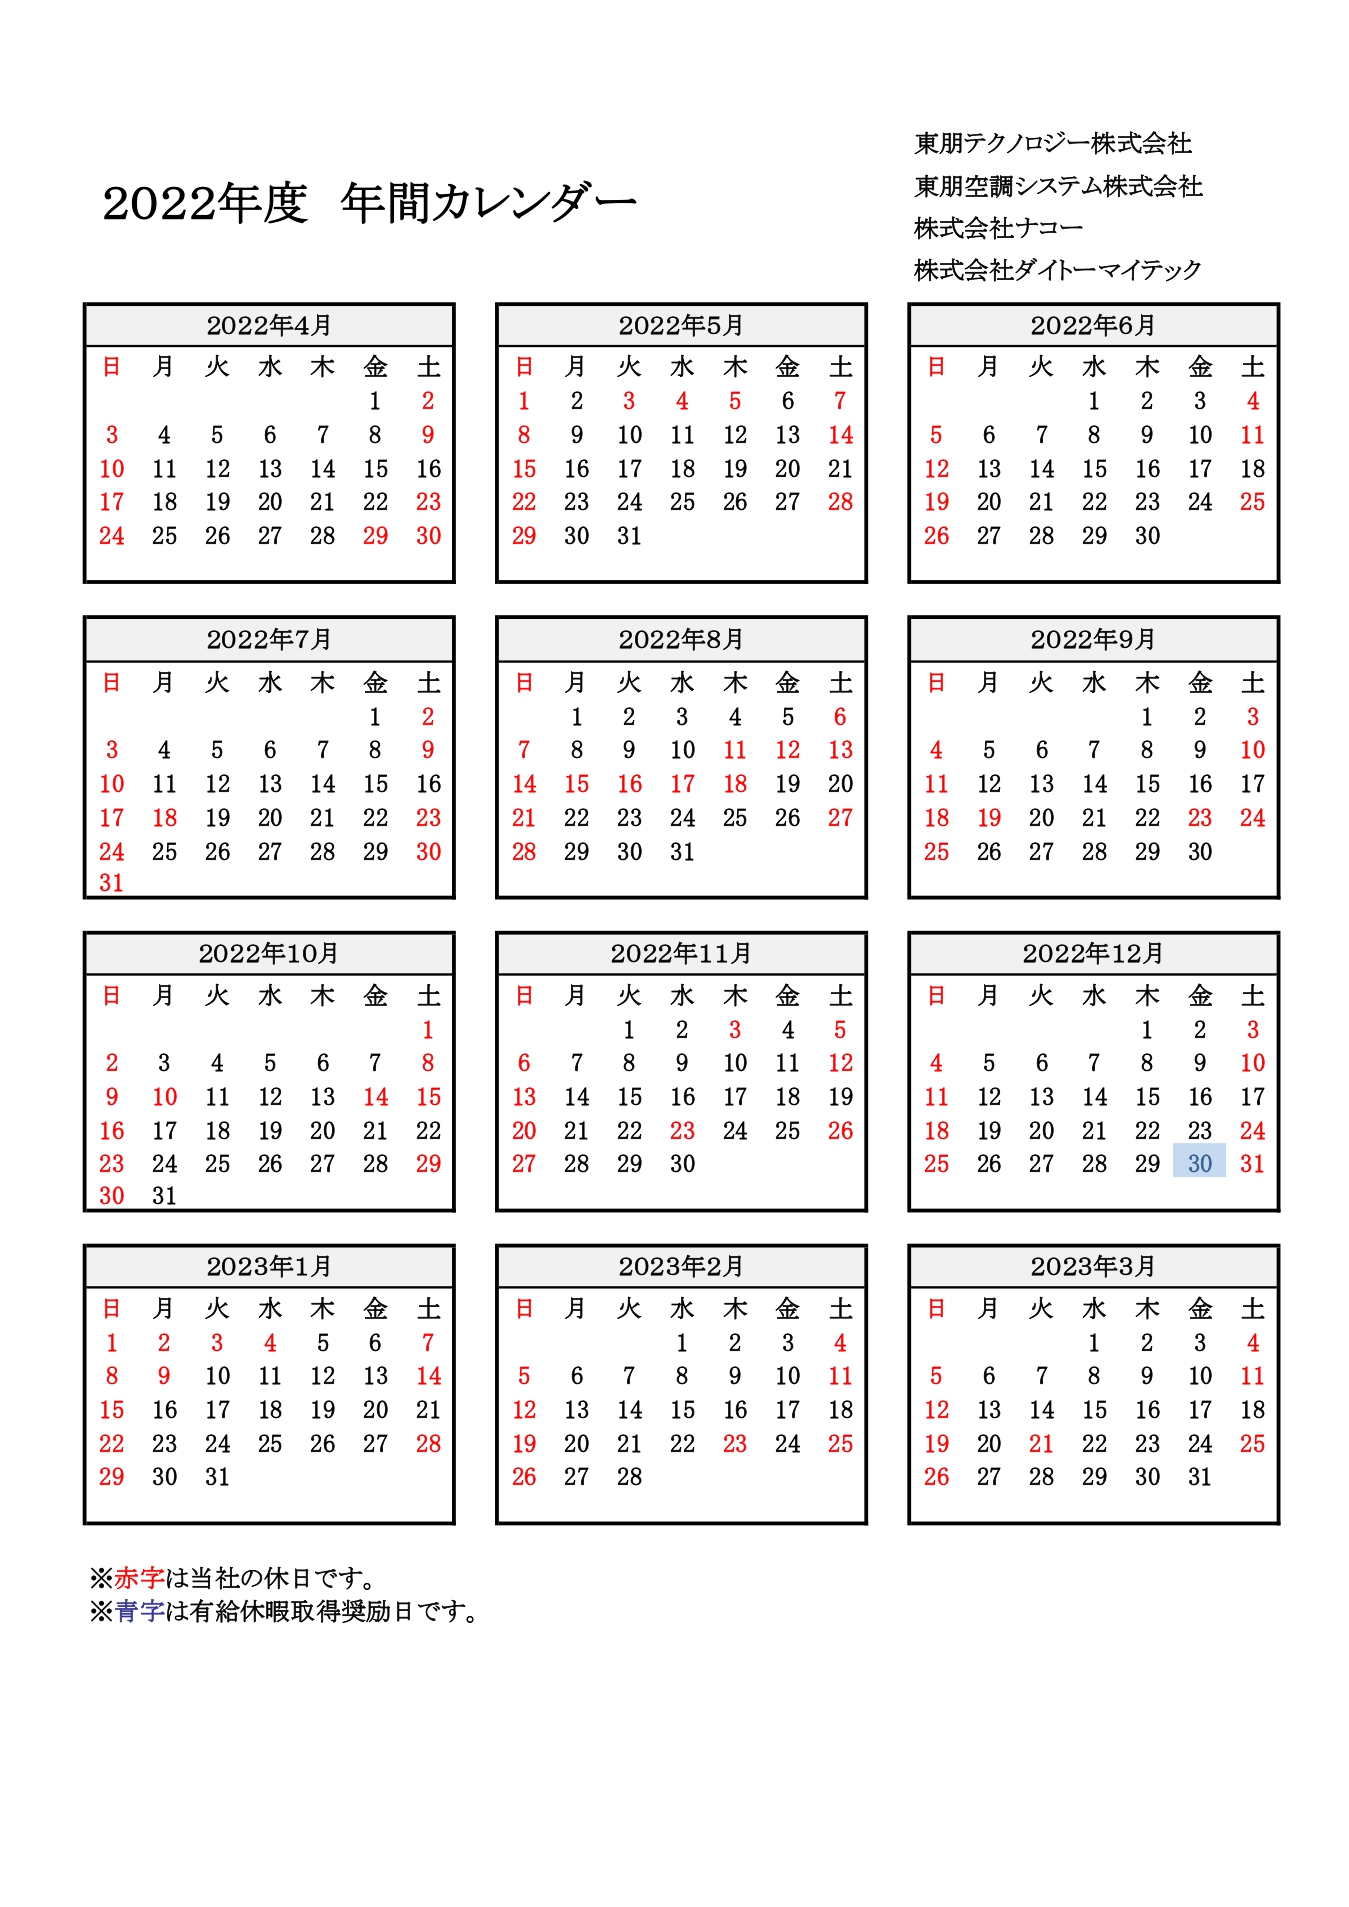 2022年度のカレンダー